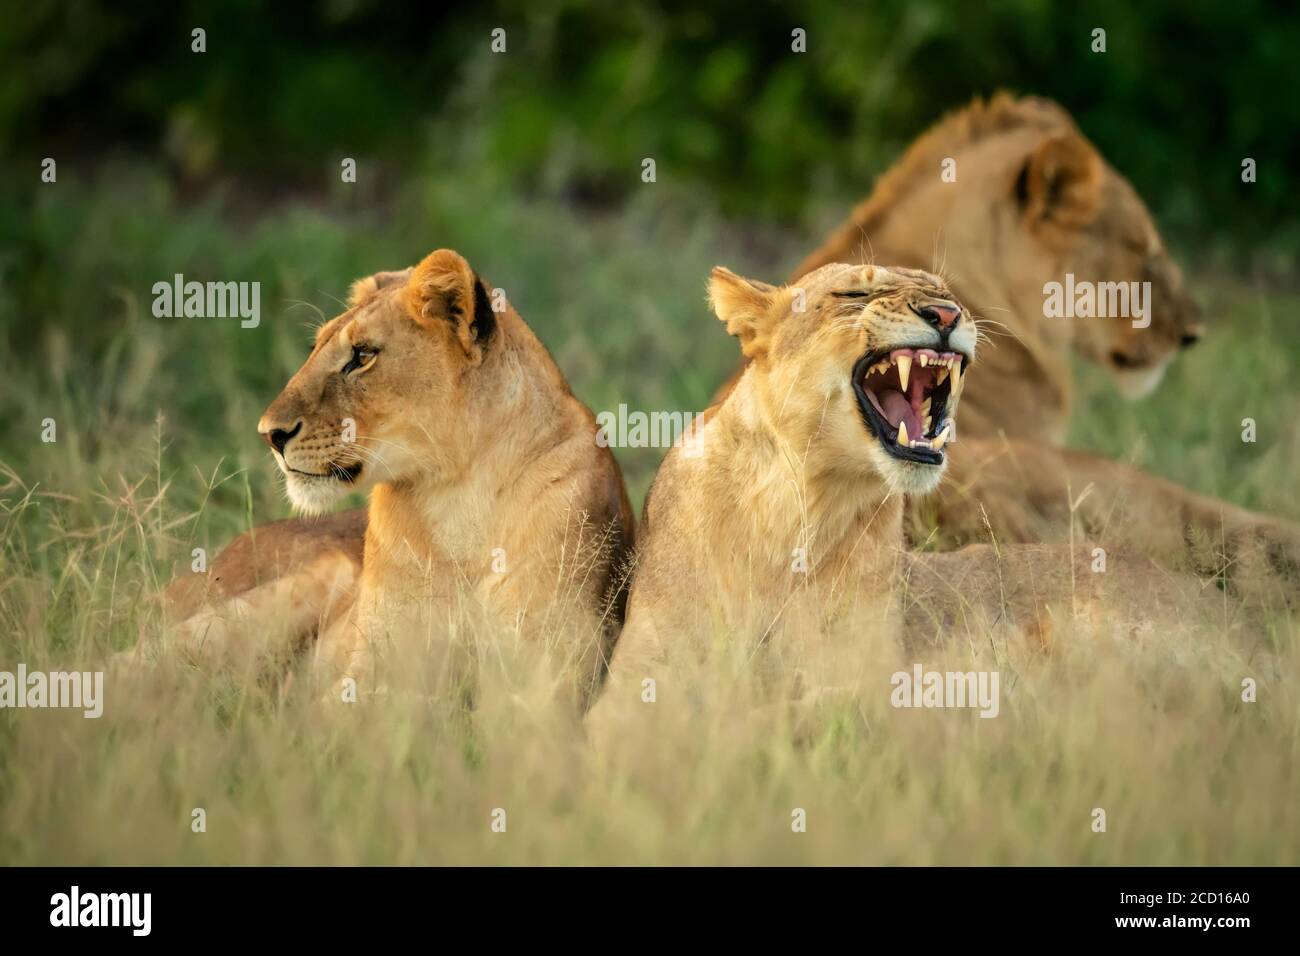 Jeunes lions (Panthera leo) couchés dans l'herbe tandis qu'on bâille; Tanzanie Banque D'Images